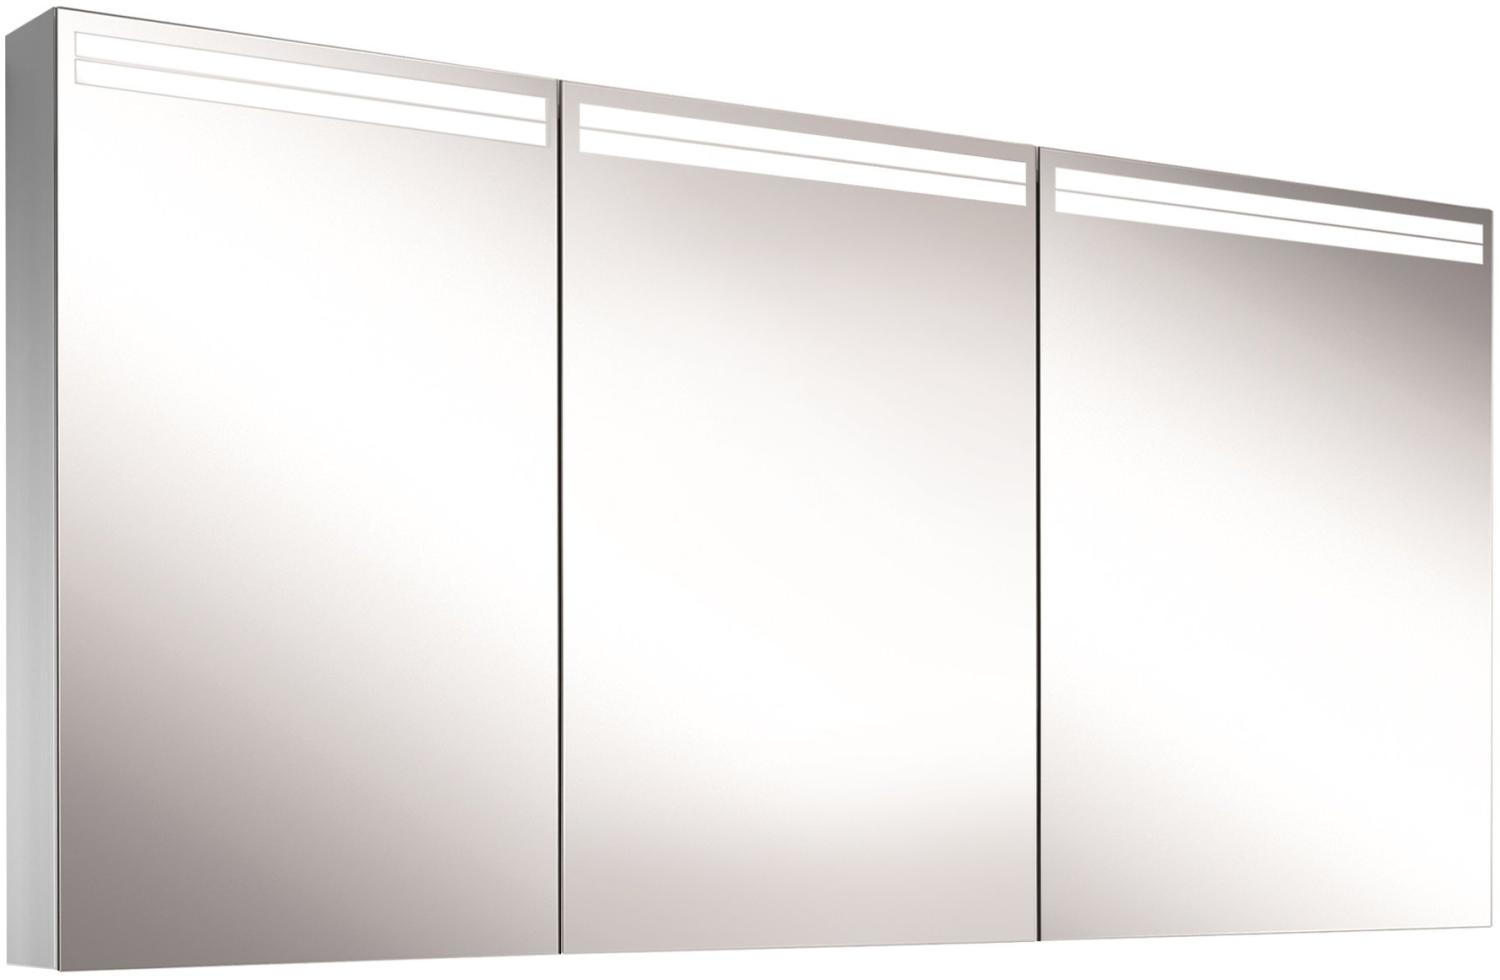 Schneider ARANGALINE LED Lichtspiegelschrank, 3 gleichgrosse Doppelspiegeltüren, 150x70x12cm, 160. 551. 02. 41, Ausführung: EU-Norm/Korpus silber eloxiert - 160. 551. 02. 50 Bild 1